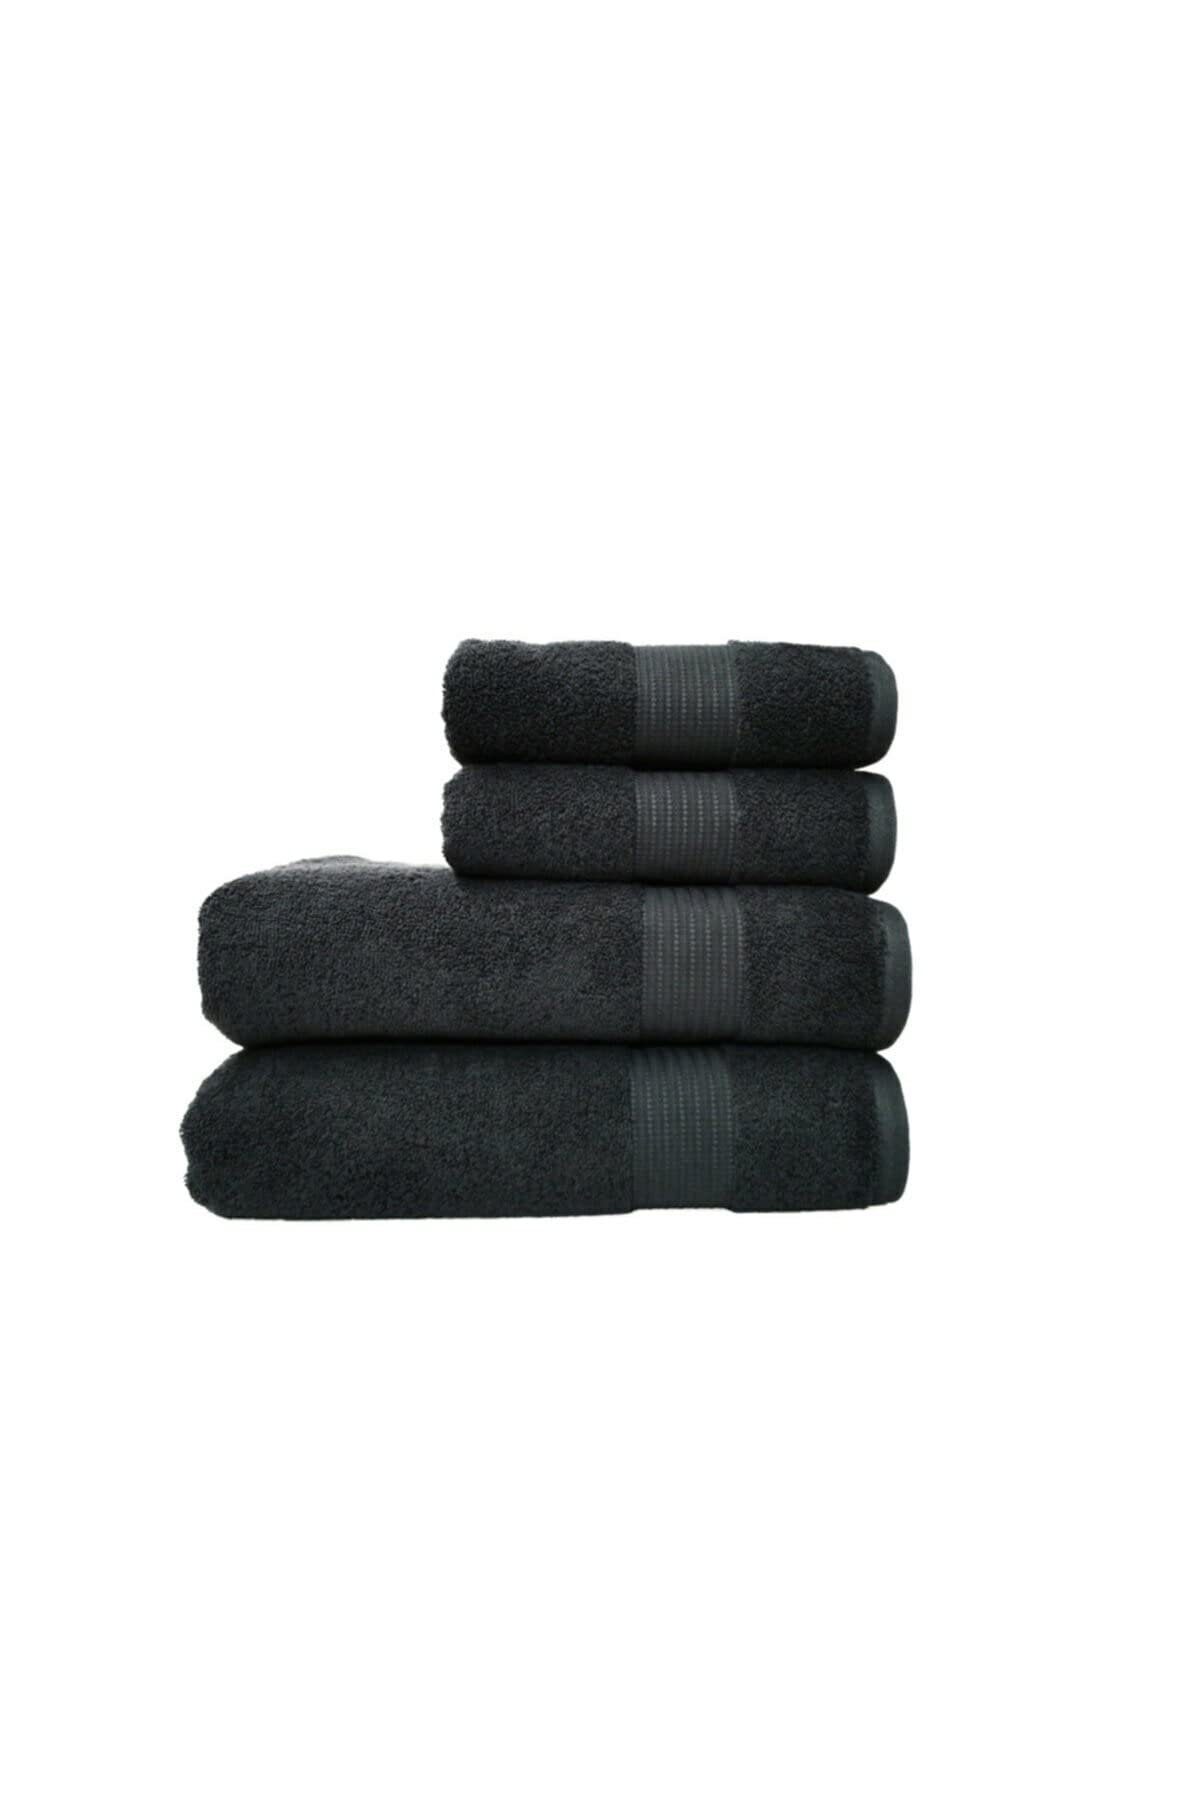 Furni24 Handtuch schwarz 4 Set Stück, Handtuchset